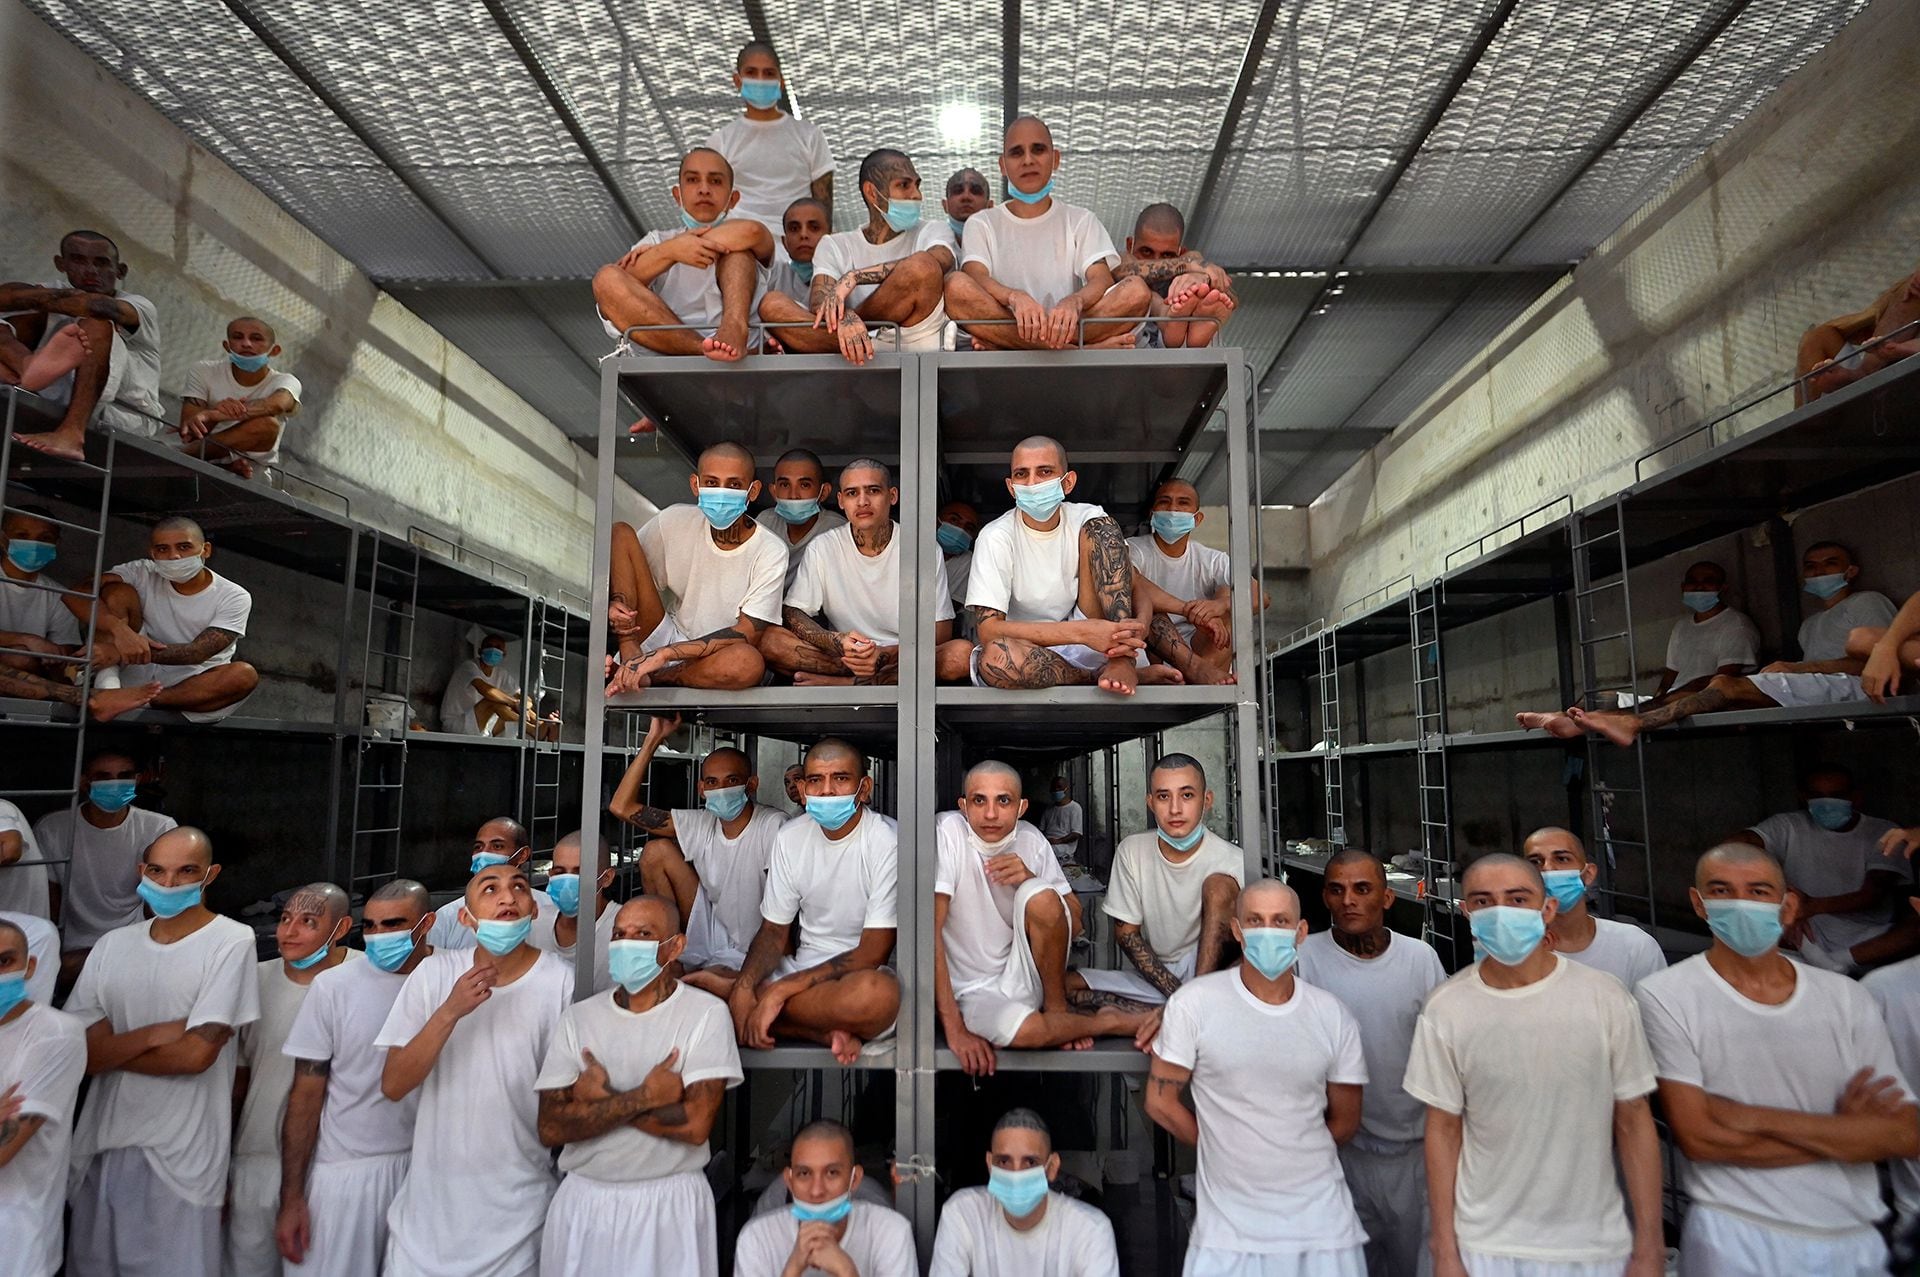 Fotos y video: a seis meses de su inauguración, así está hoy la megacárcel de Bukele en El Salvador